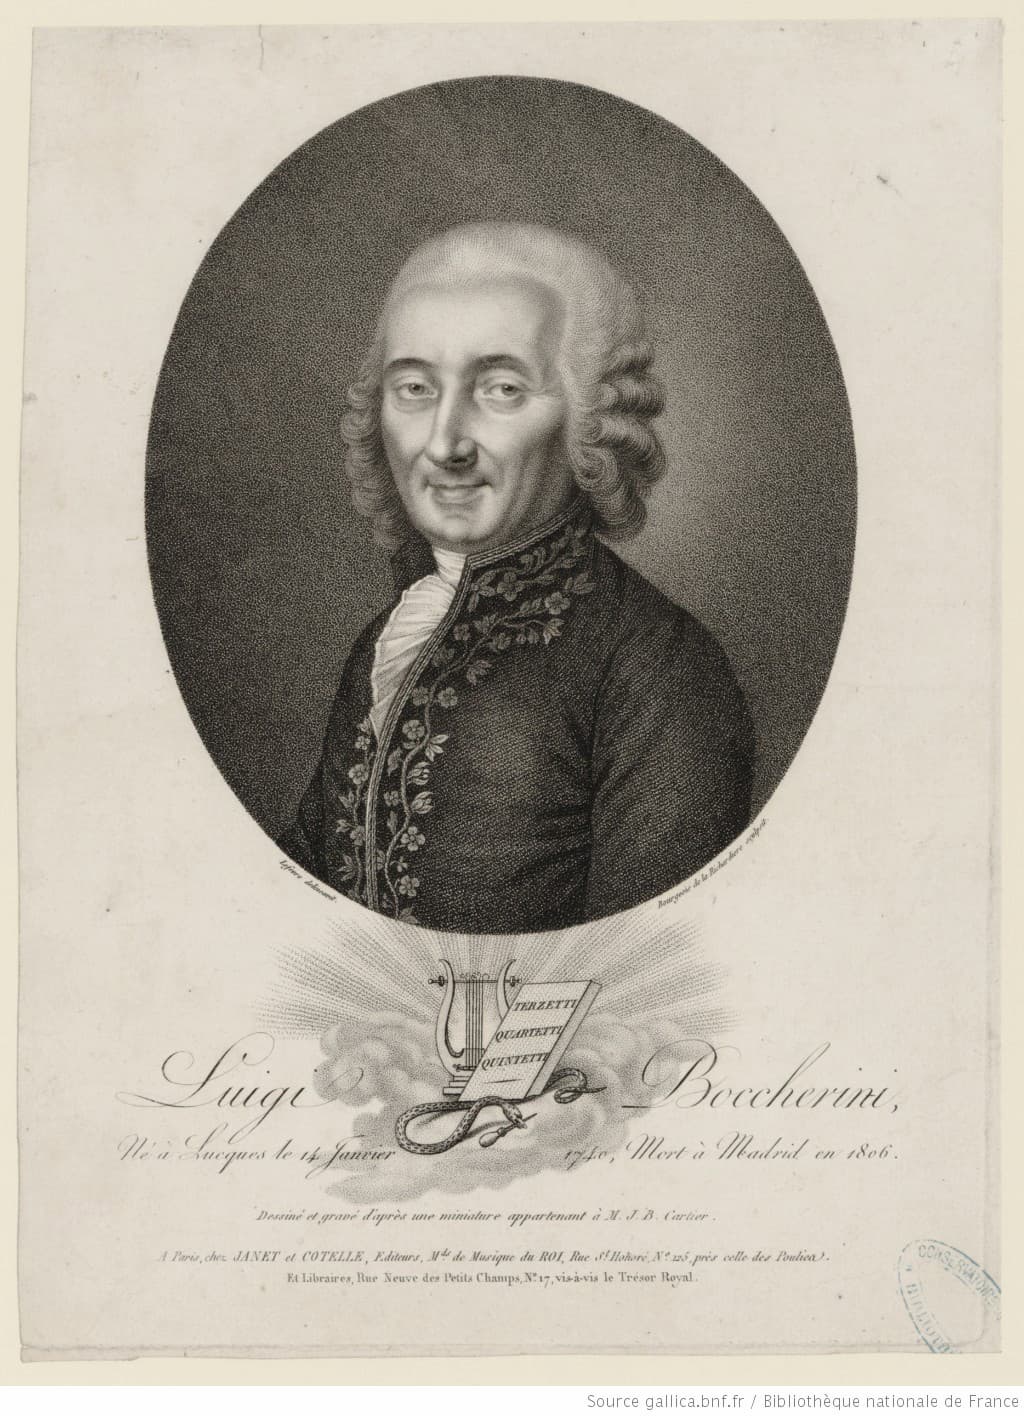 Antoine Bourgeois de La Richardière, after Lefèvre: Luigi Boccherini, 1806 (Bibliothèque nationale)